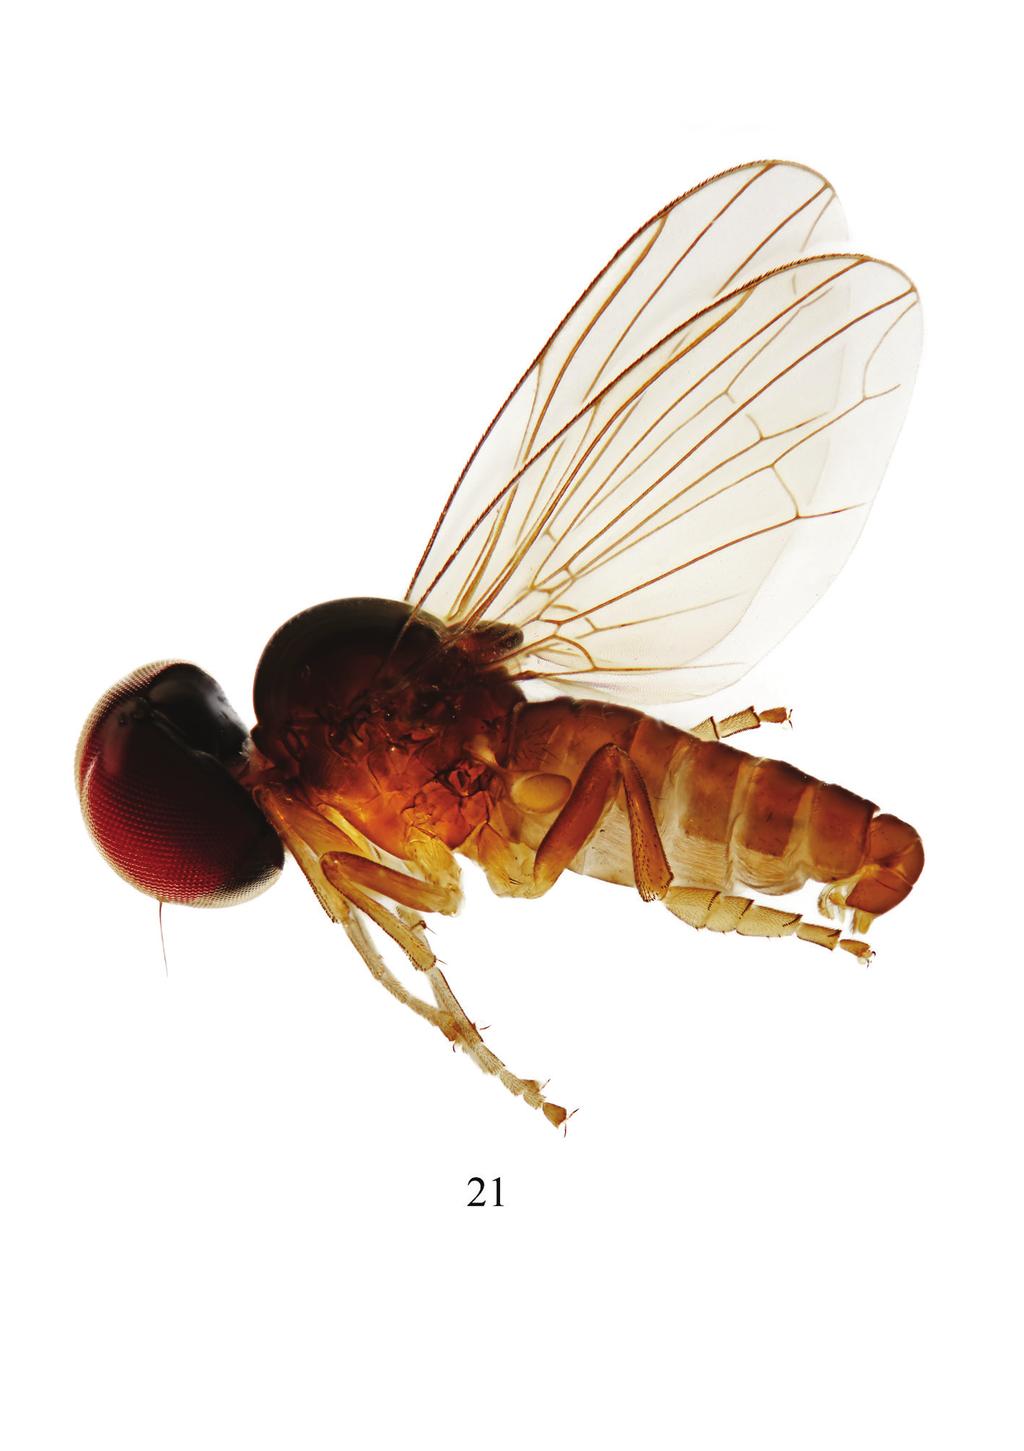 67 Linderomyia of Laos Figure 21.